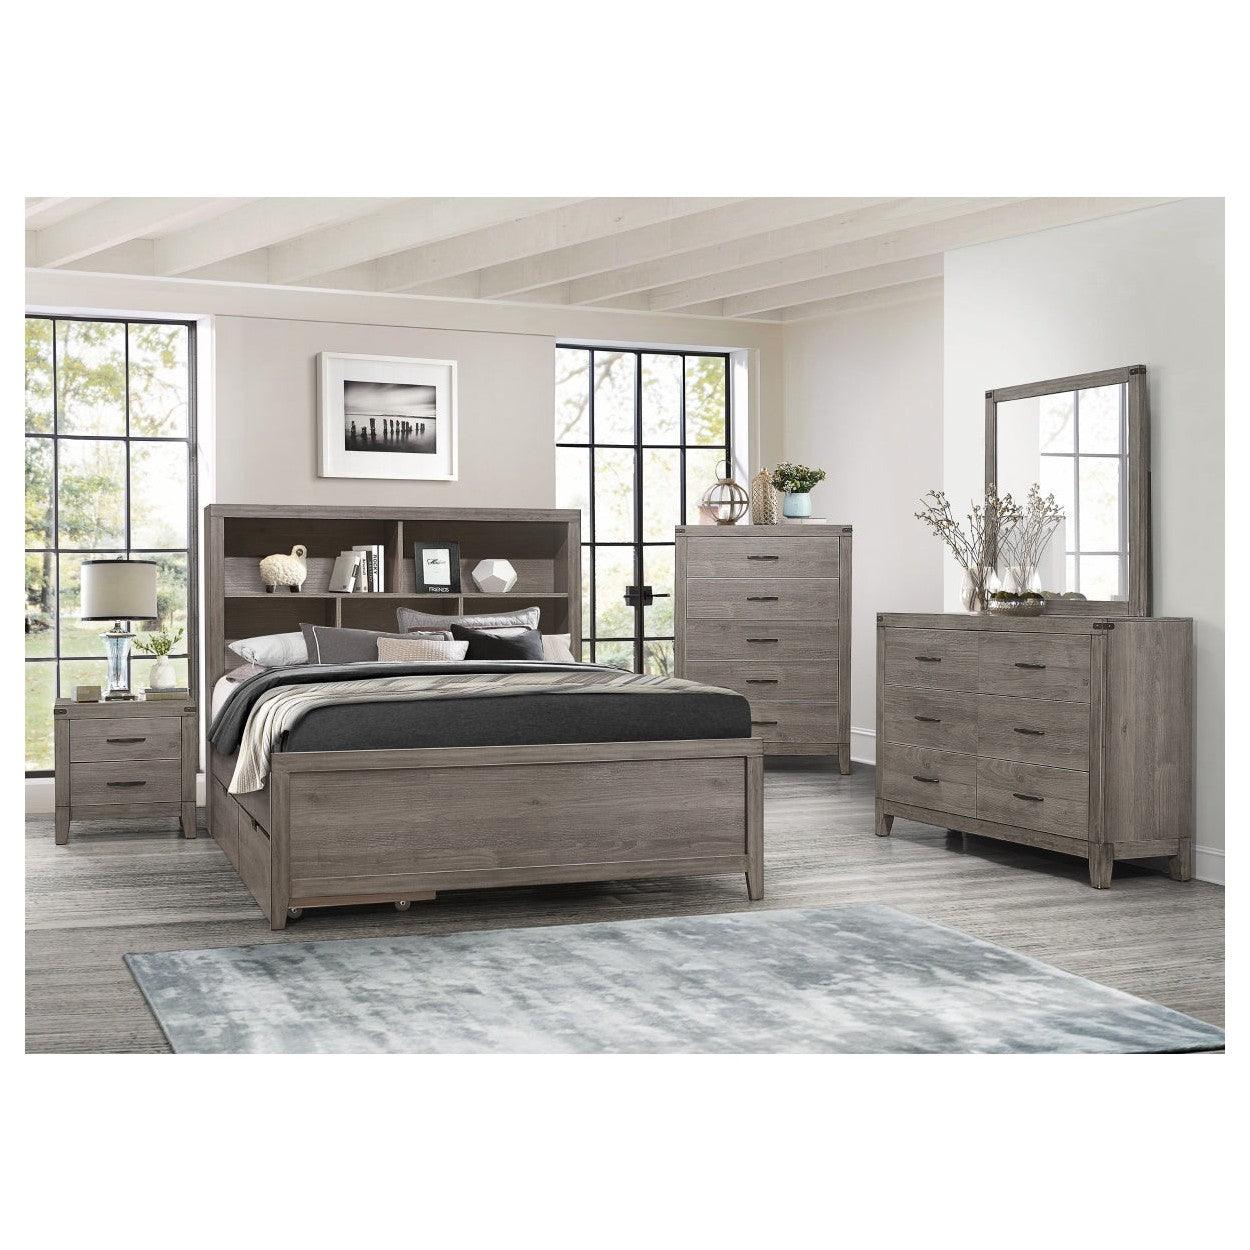 East West Furniture KD16Q-2GA08 - Juego de ropa de cama Queen de 3 piezas,  1 cama de plataforma de tela de lino color caqui oscuro acolchado y